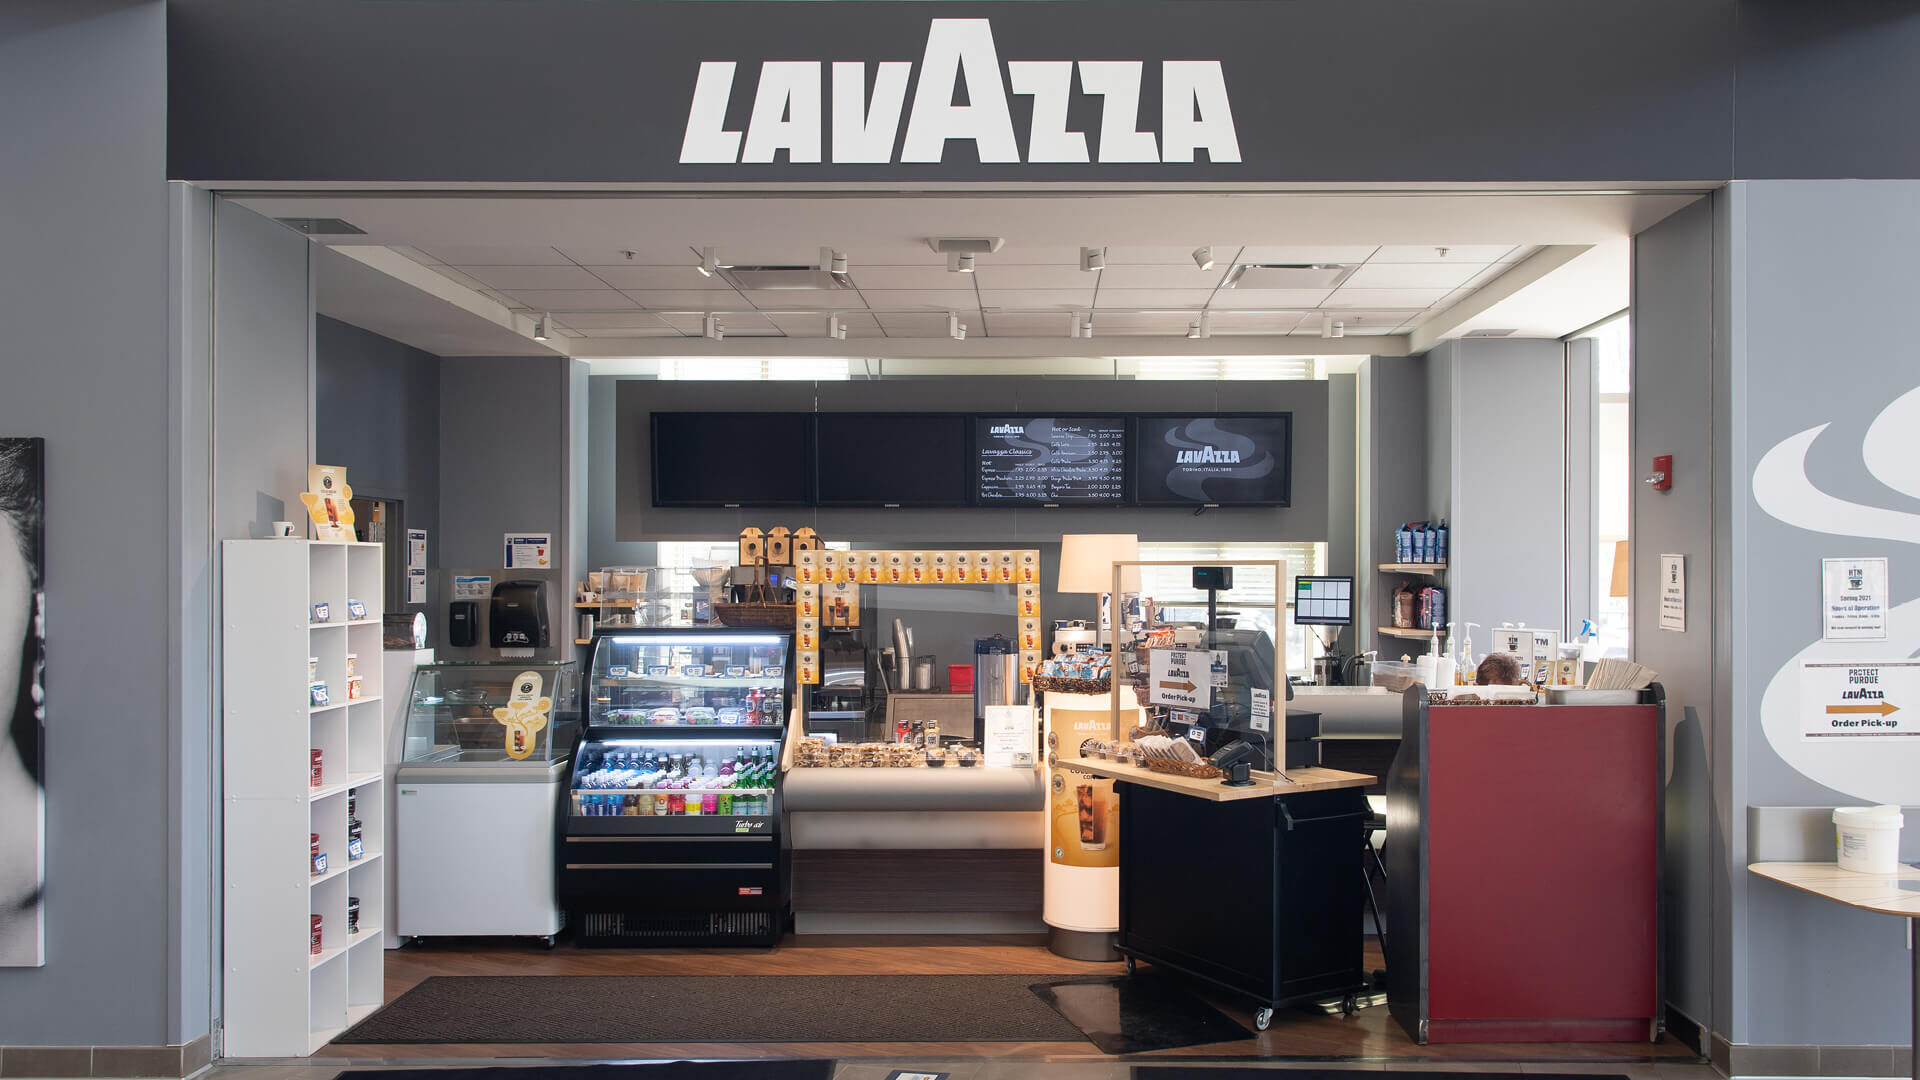 LavAzza Coffee Shop